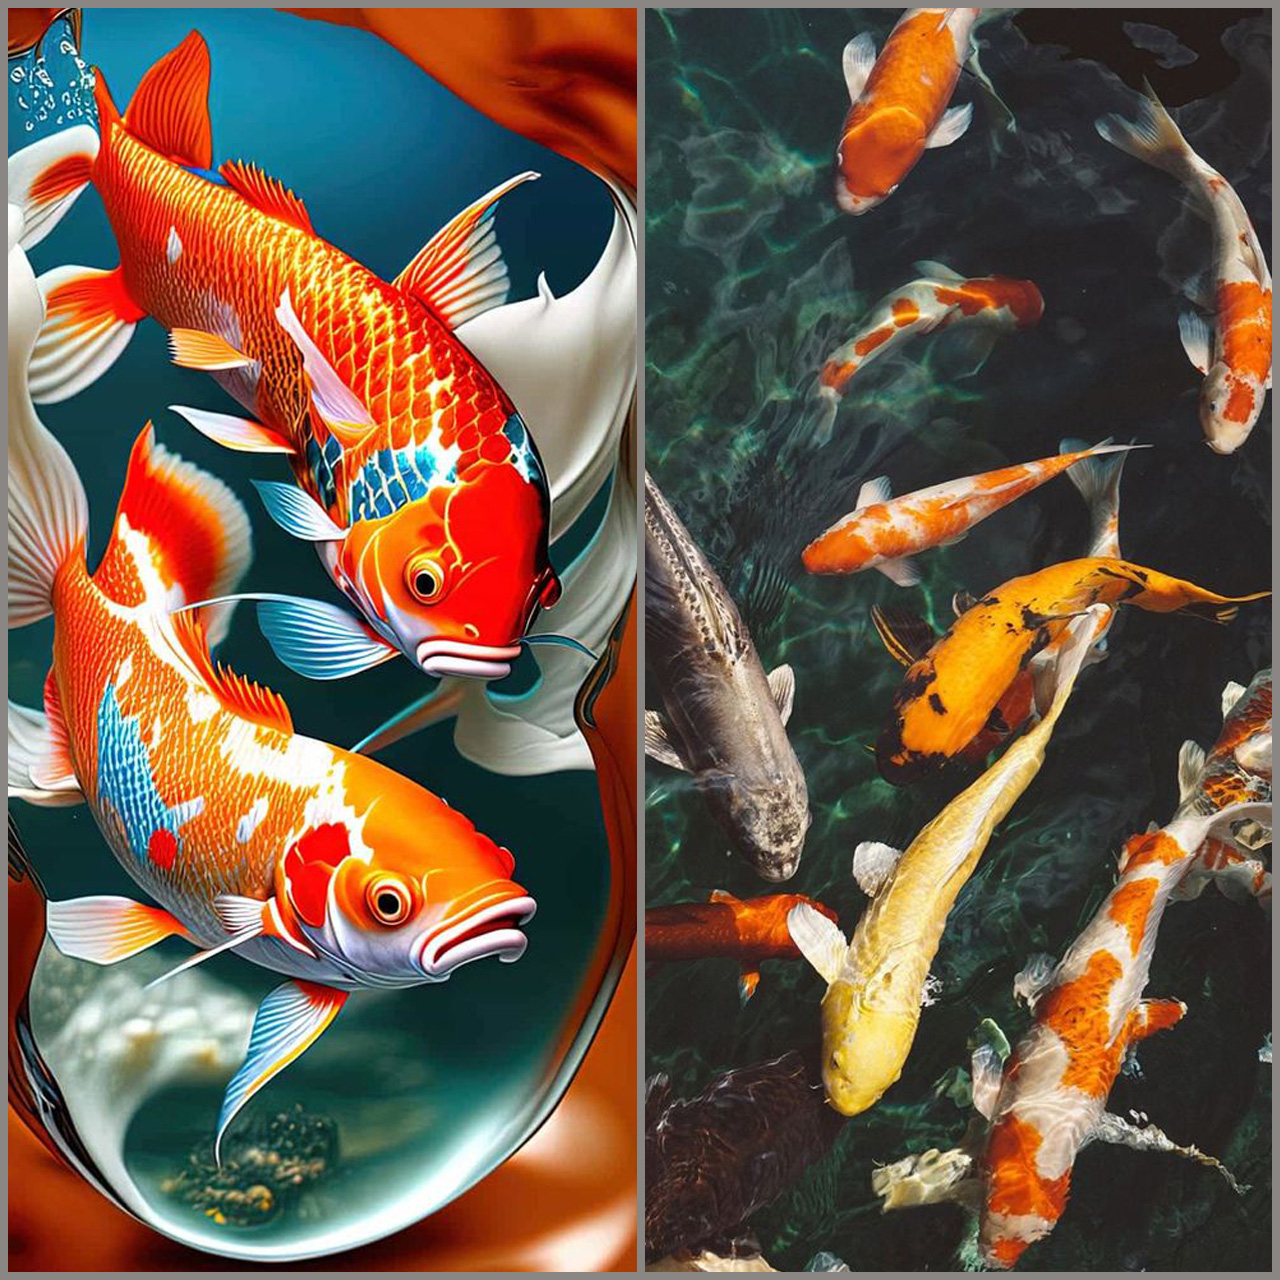 Tổng hợp hình ảnh cá Chọi đẹp nhất | Fish wallpaper iphone, Fish wallpaper,  Iphone 6s wallpaper